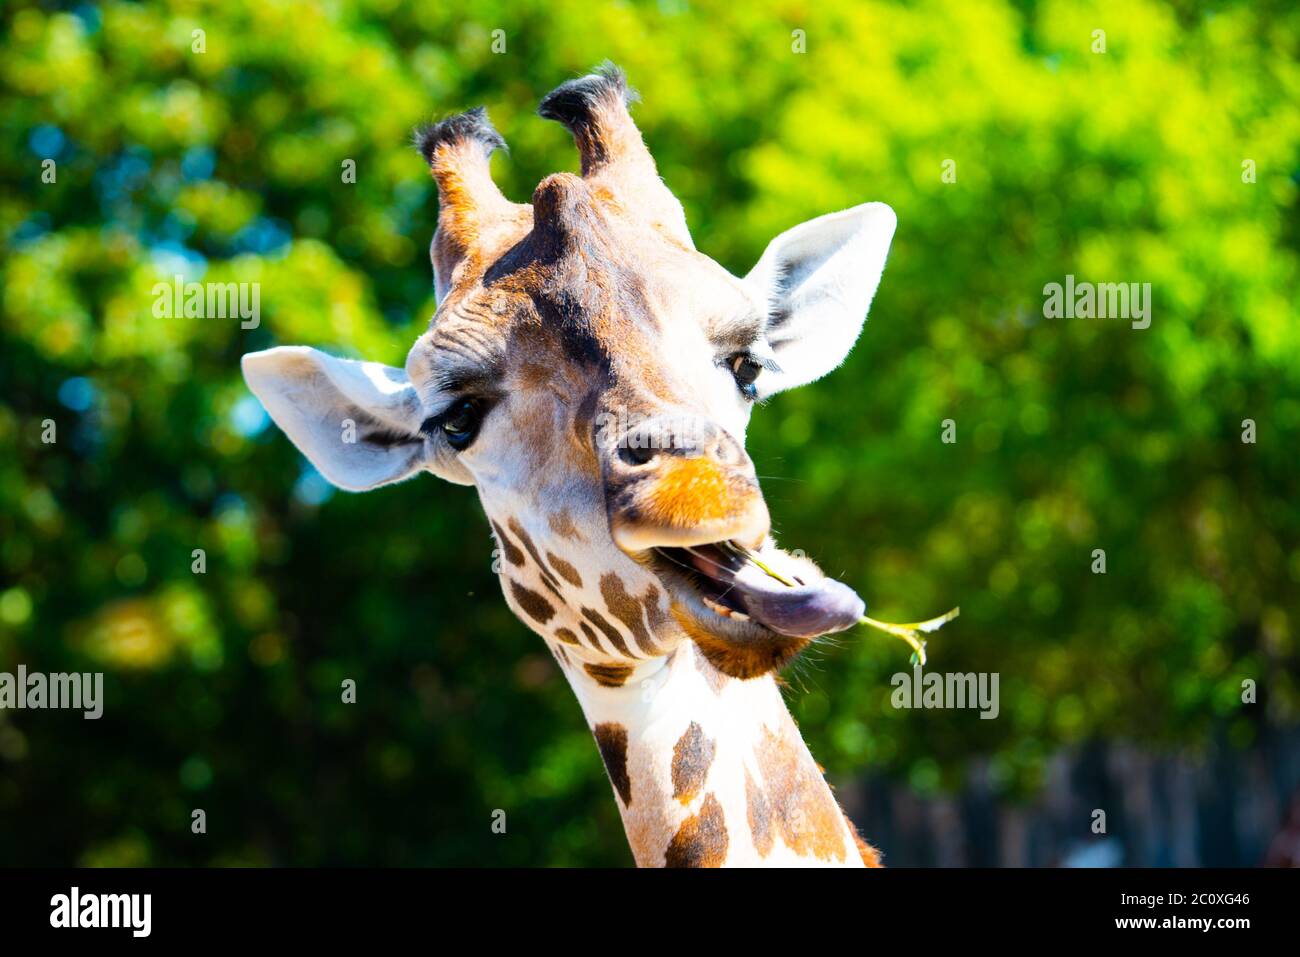 Ritratto di giraffa con lingua lunga masticando piccolo ramoscello dall'albero. Foto Stock